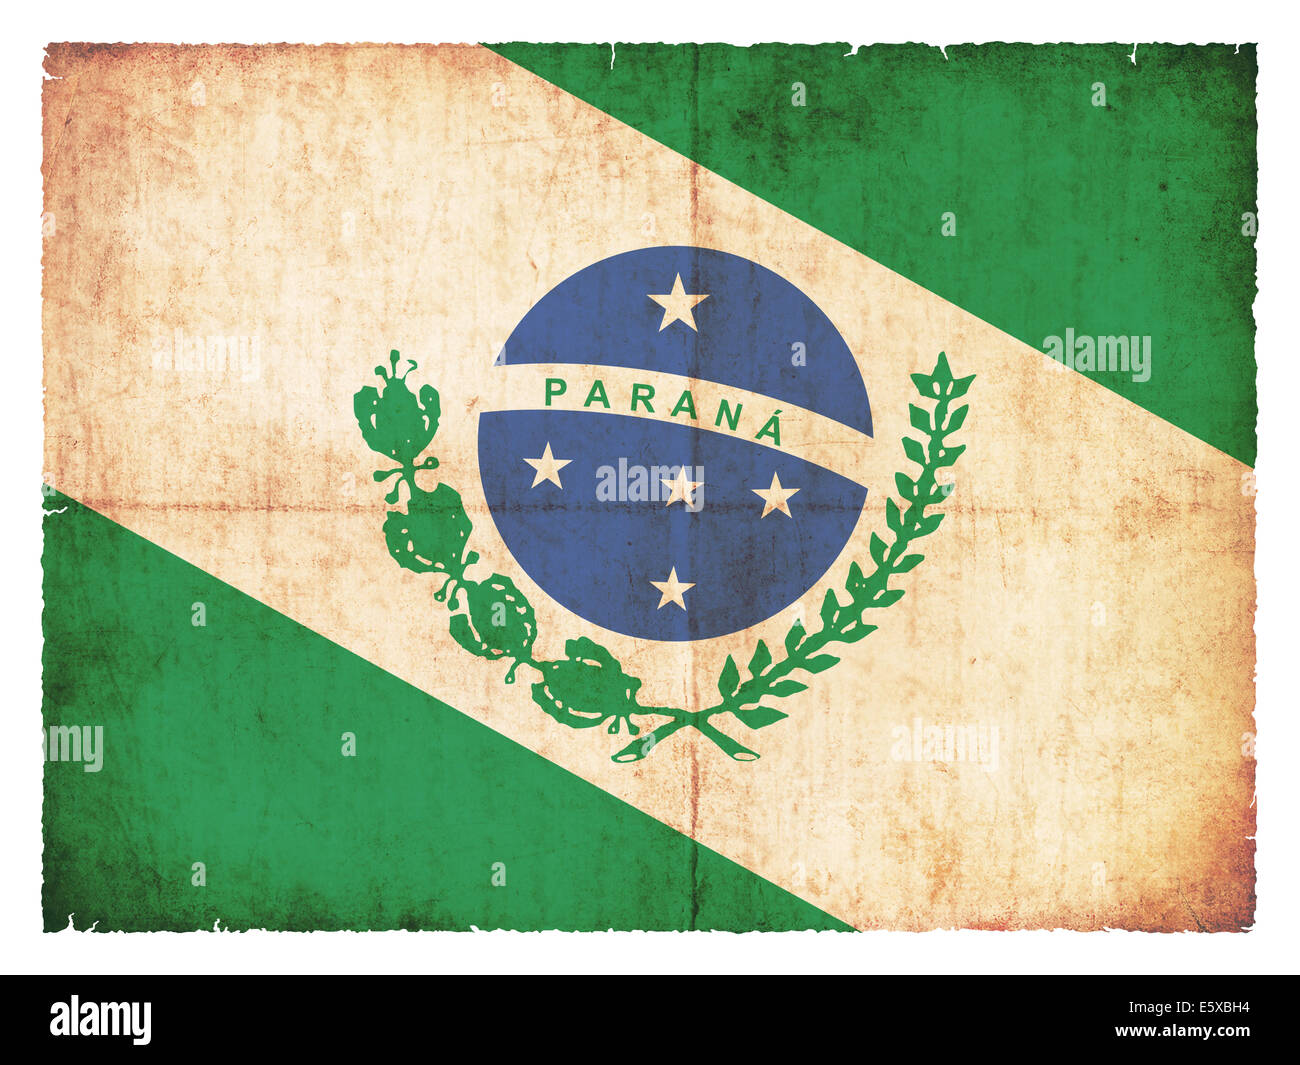 Drapeau de l'État brésilien Parana créé en grunge style Banque D'Images